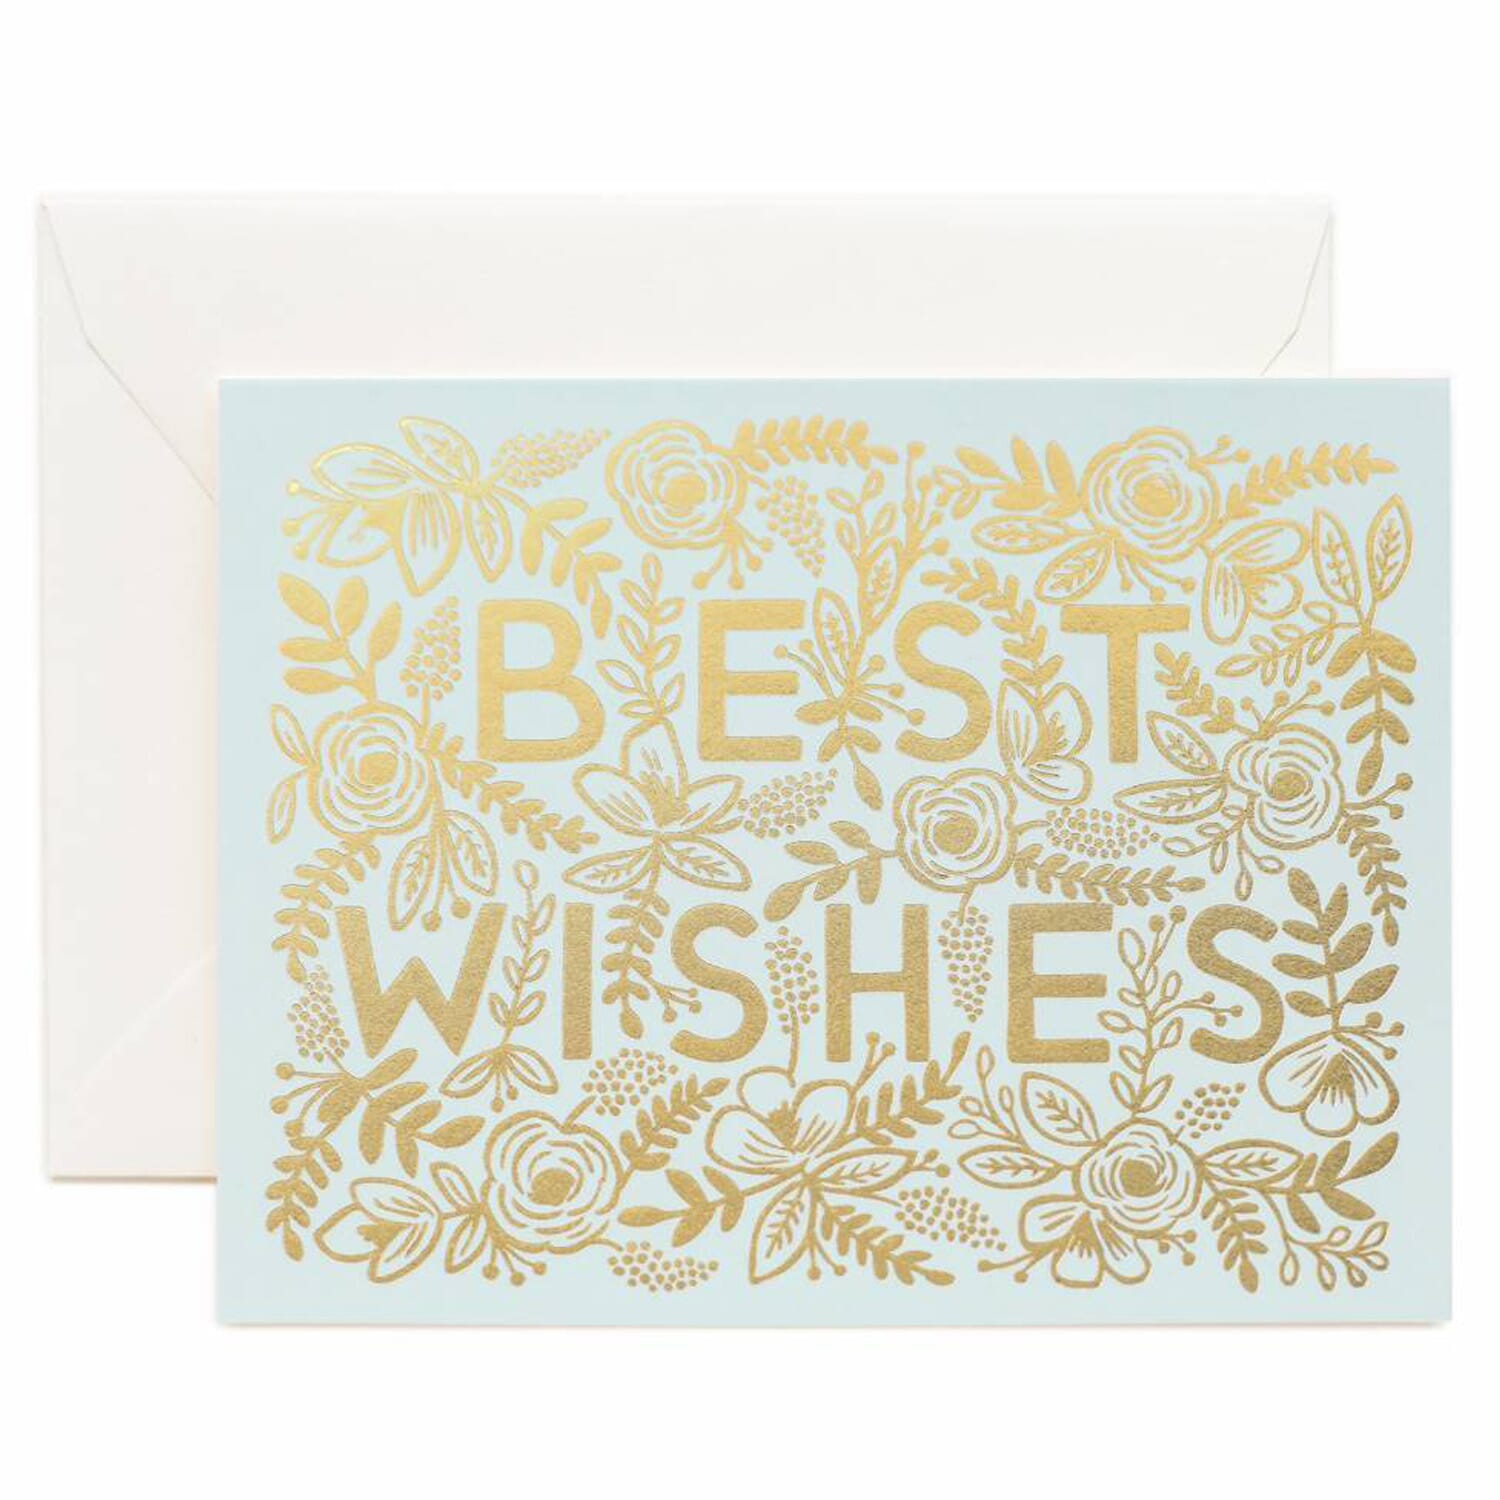 Best Wishes Encouragement Card